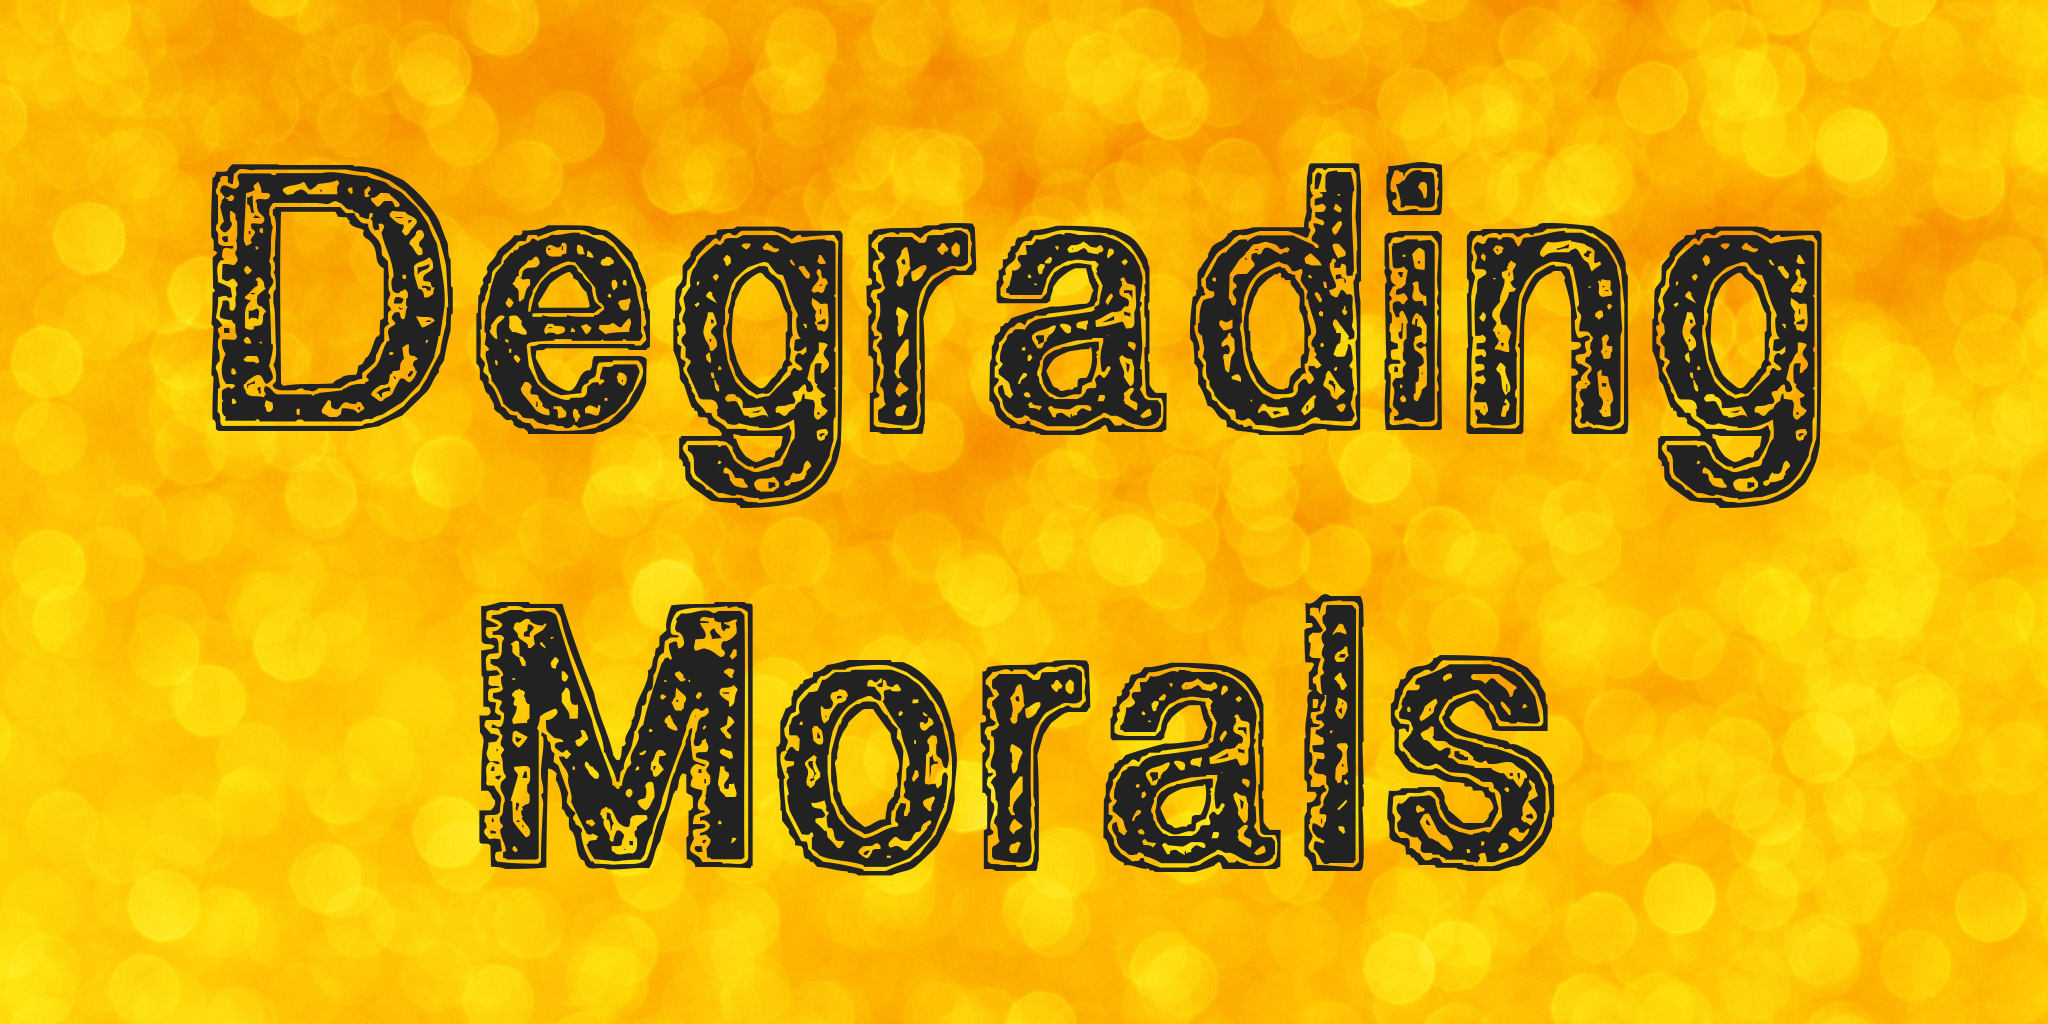 Degrading Morals